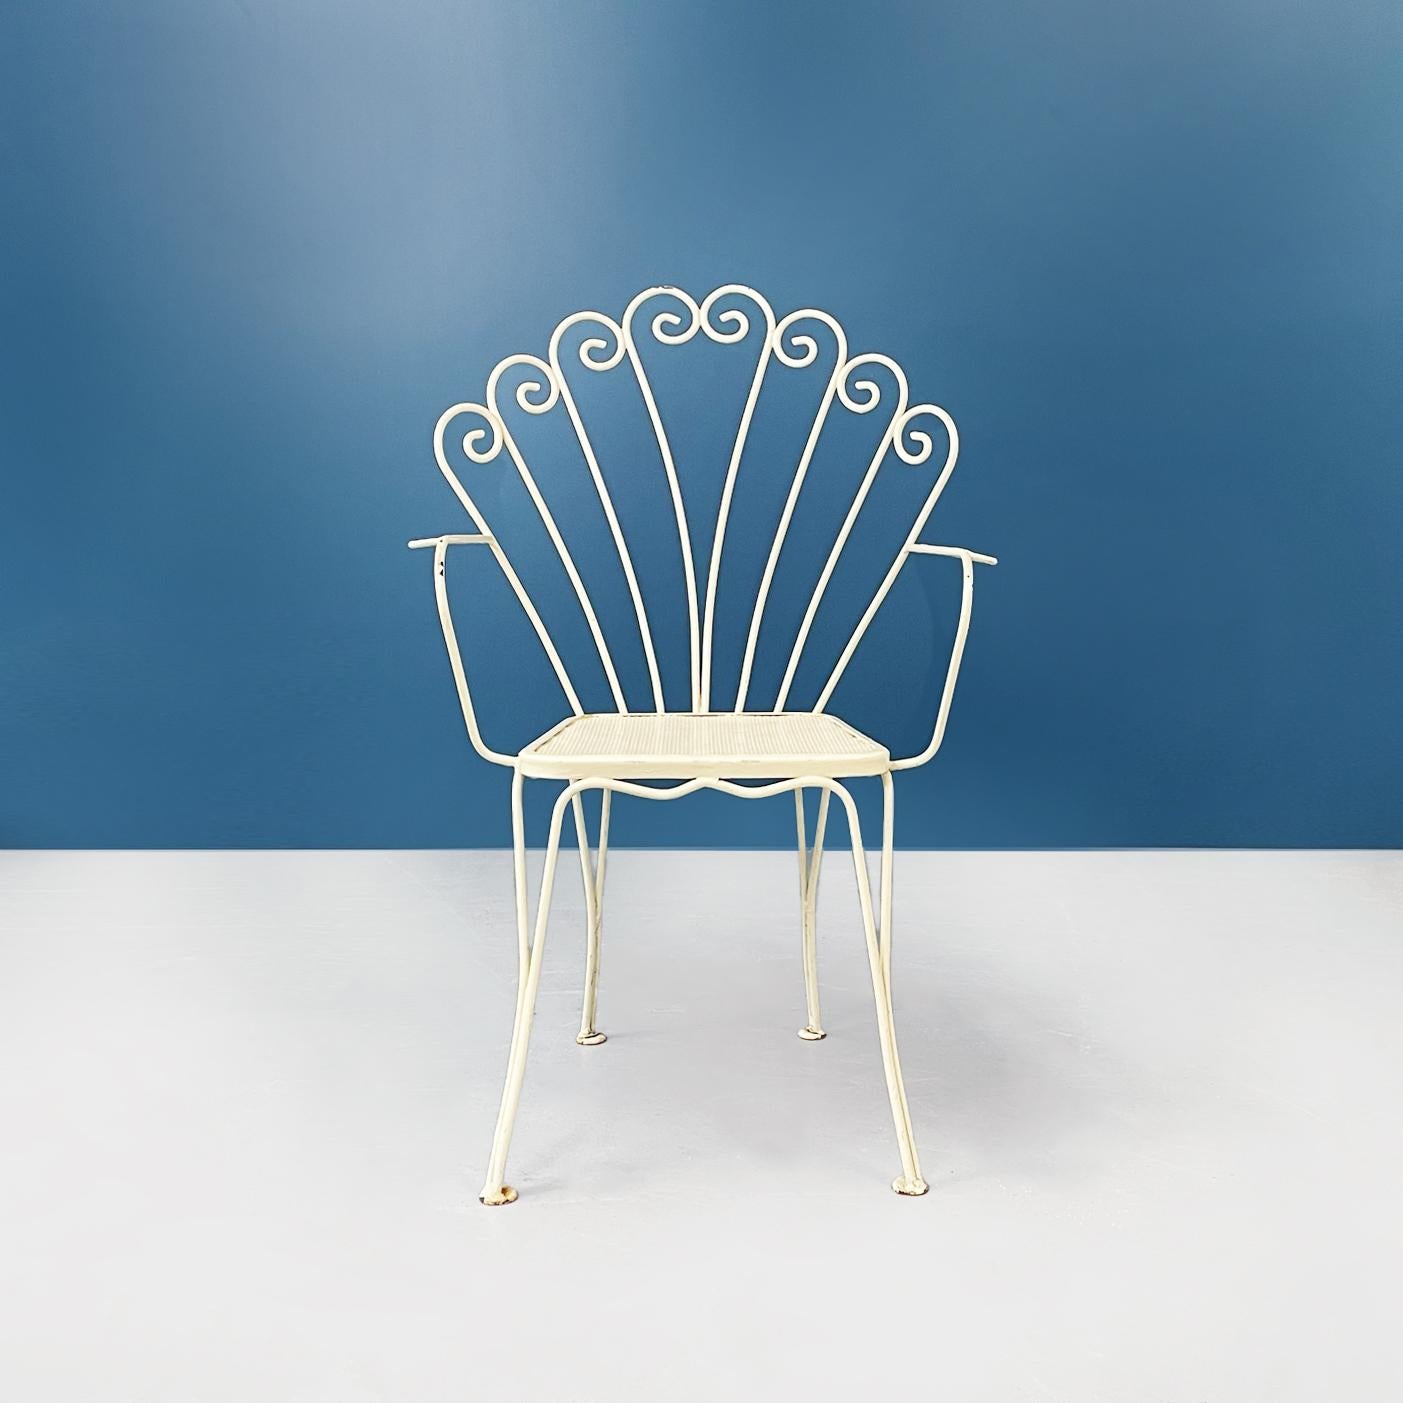 Chaises de jardin italiennes en fer forgé blanc de style moderne du milieu du siècle, années 1960
Ensemble de 4 chaises de jardin en fer forgé peint en blanc crème. Le siège perforé est de forme carrée avec des coins arrondis. Le dos est légèrement